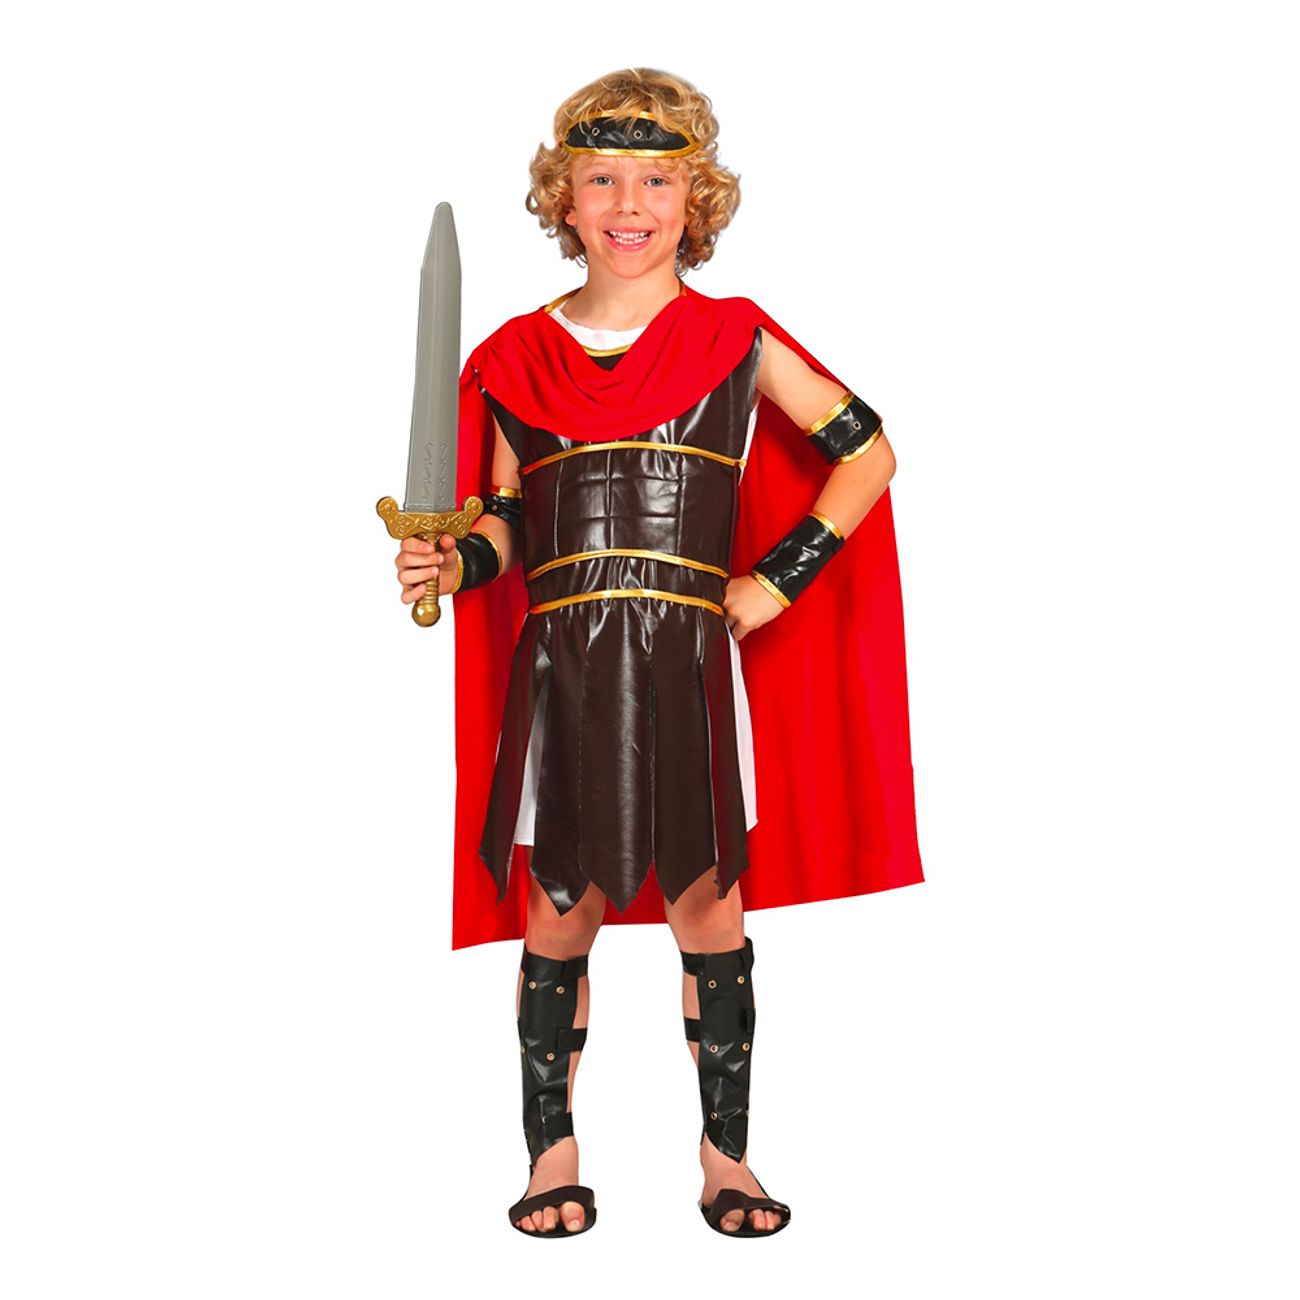 romersk-krigare-teen-maskeraddrakt-76739-1